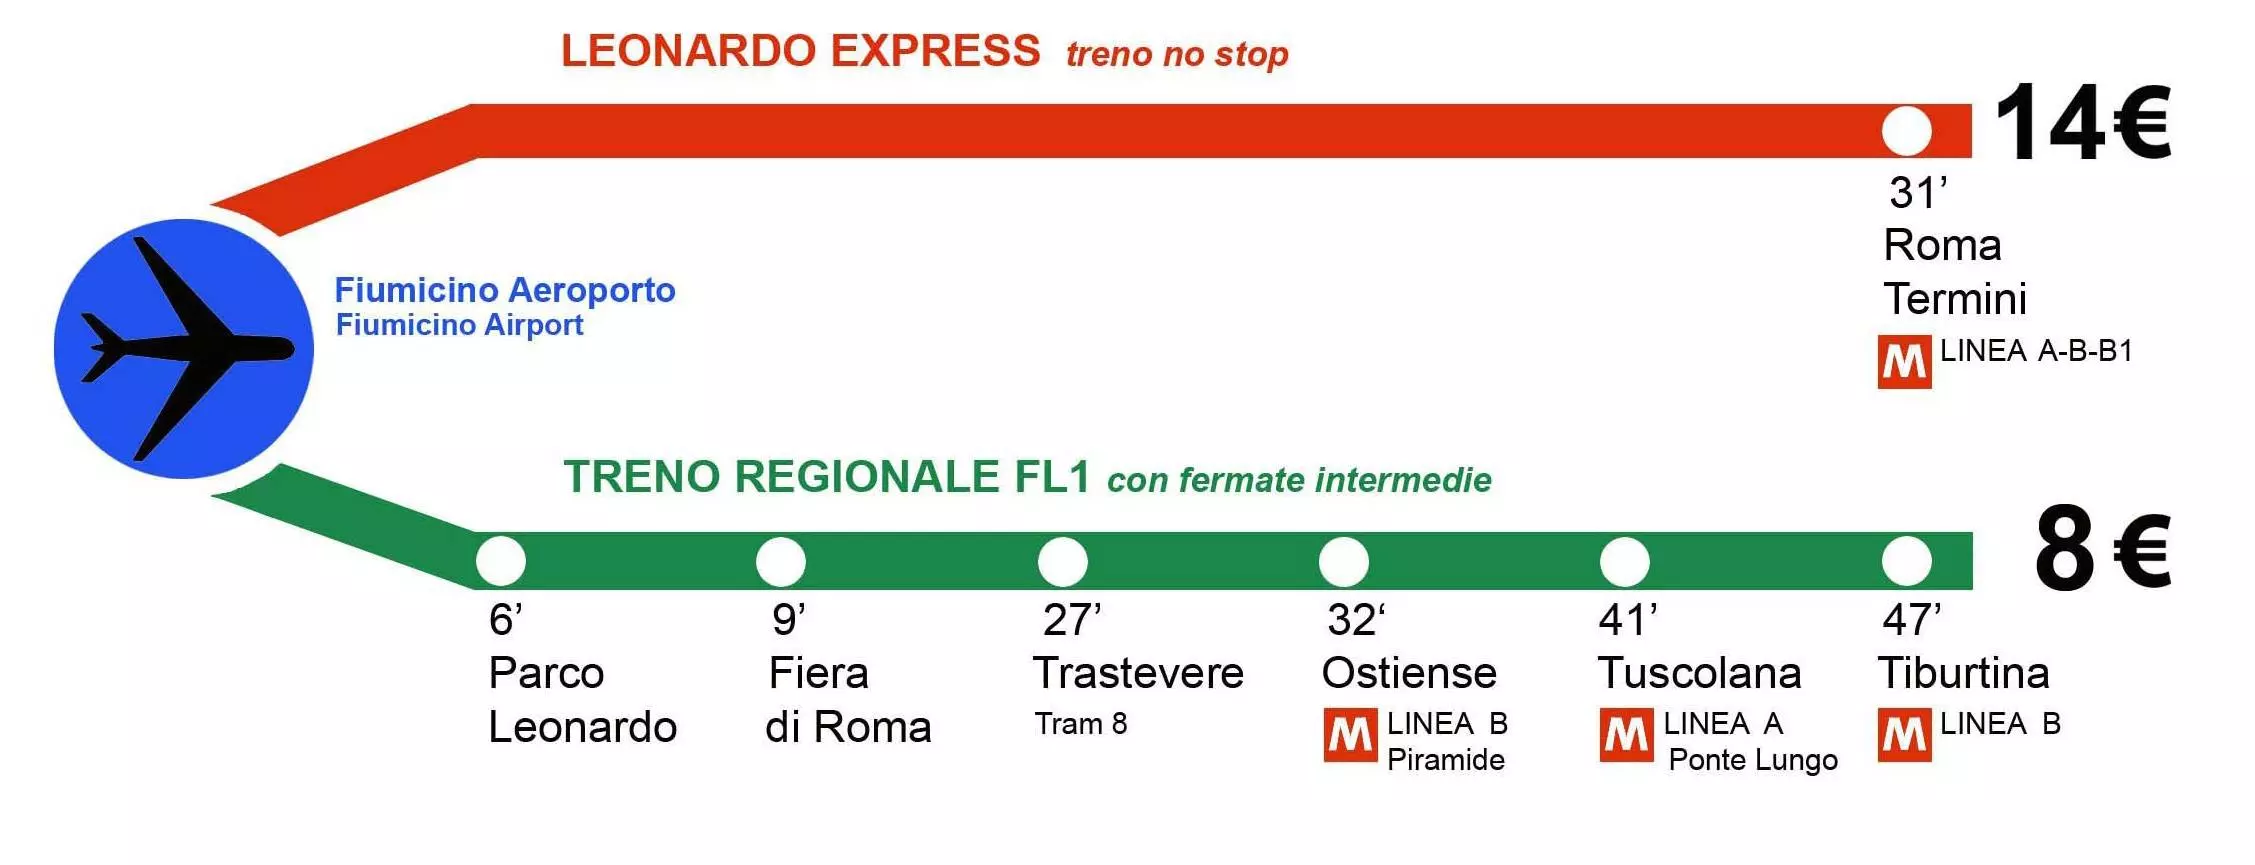 Как добраться из аэропорта фьюмичино до центра рима: фото инструкция | поездка в рим - все о риме и еще больше об италии